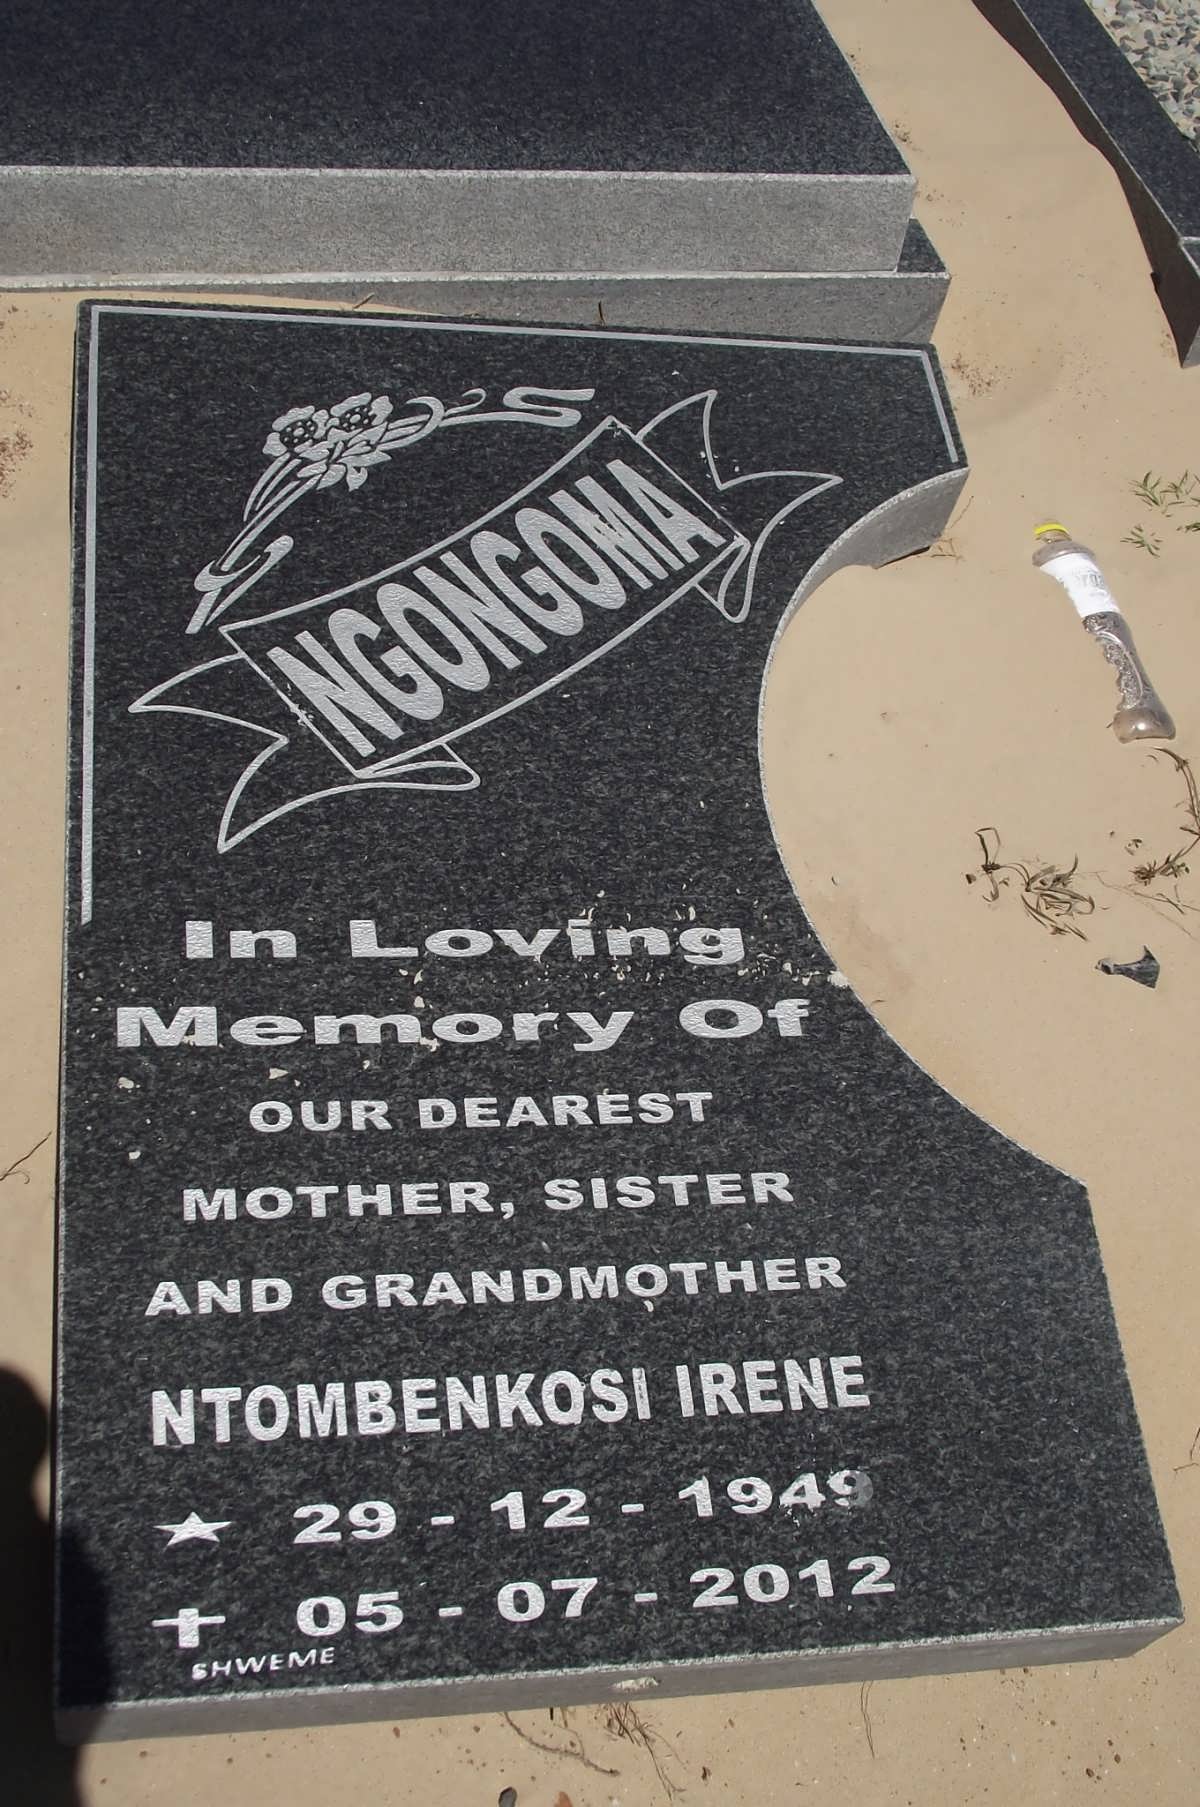 NGONGOMA Ntombenkosi Irene 1949-2012